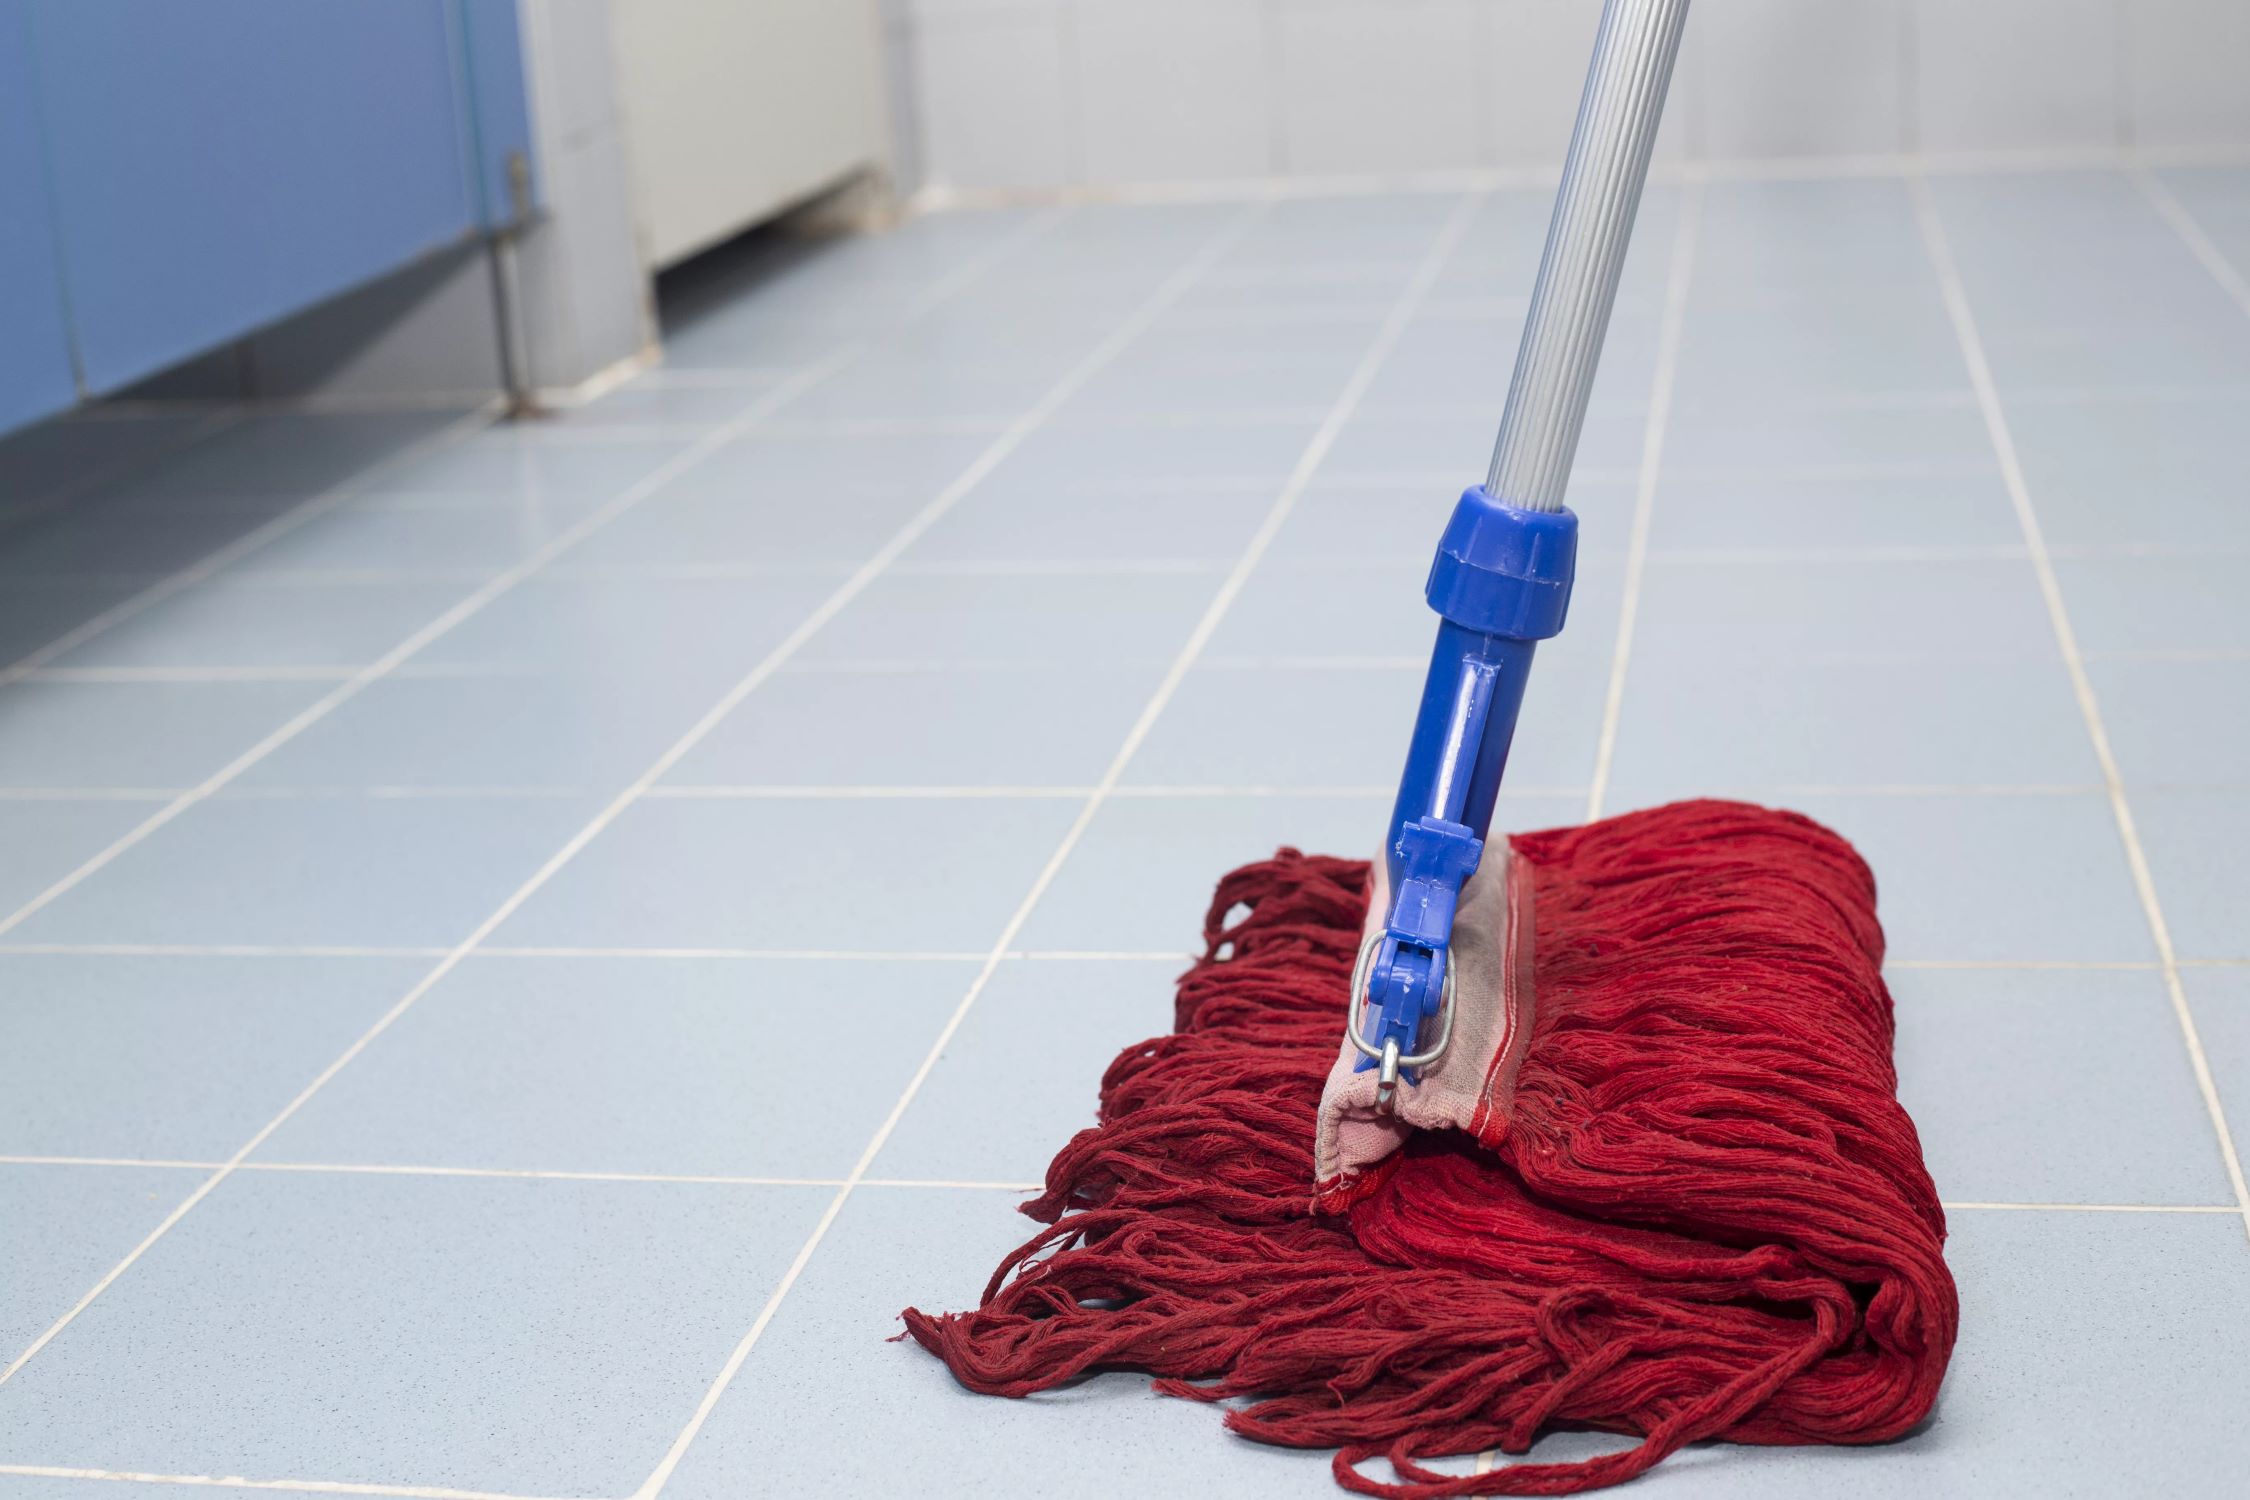 How To Mop A Floor